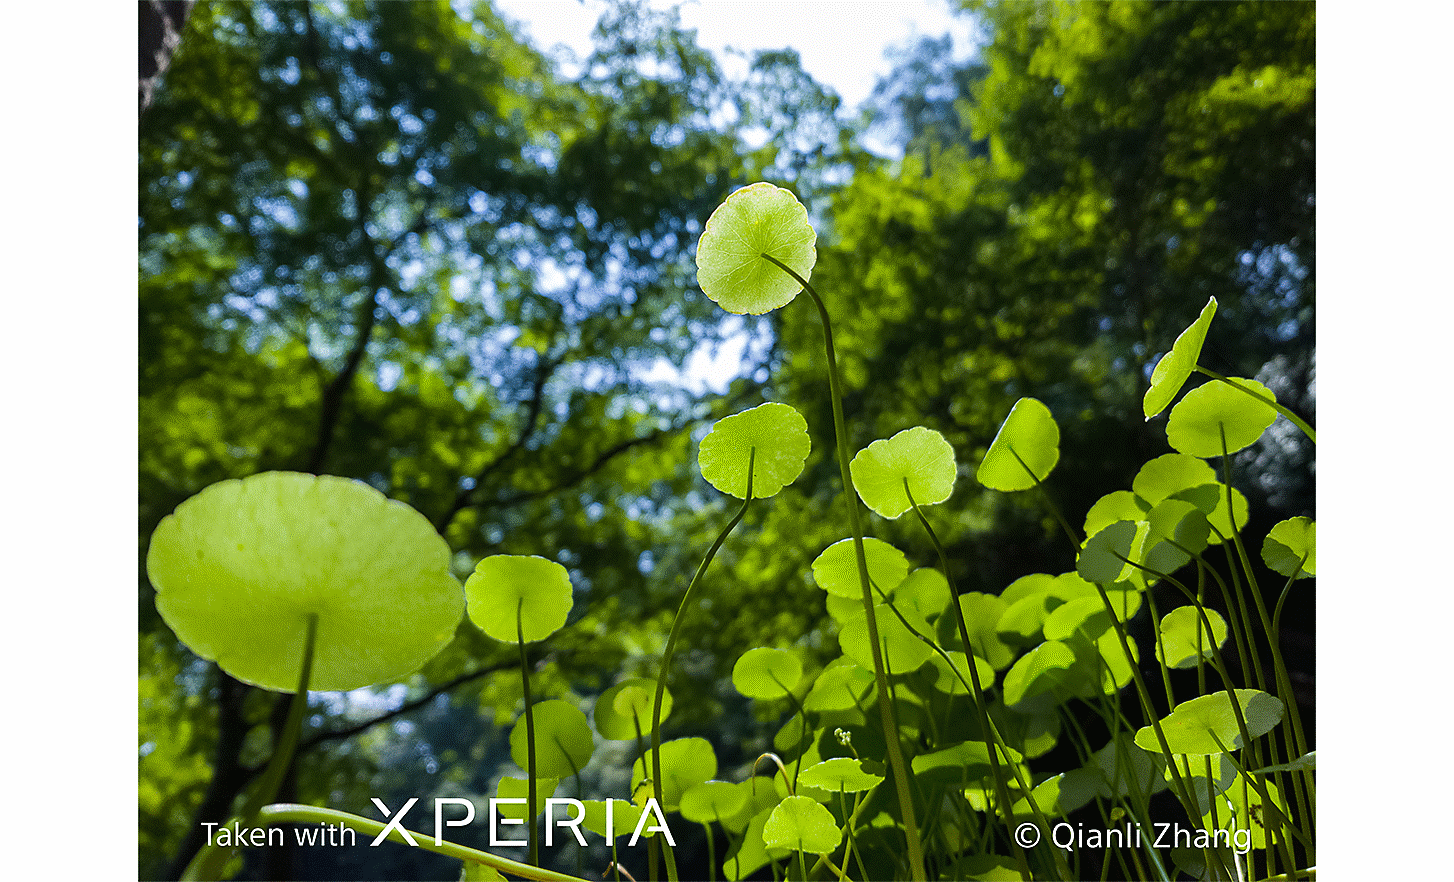 前景中細緻樹葉的特寫，背景是茂密的大樹。寫著「使用 XPERIA 拍攝 ©Qianli Zhang」的文字。